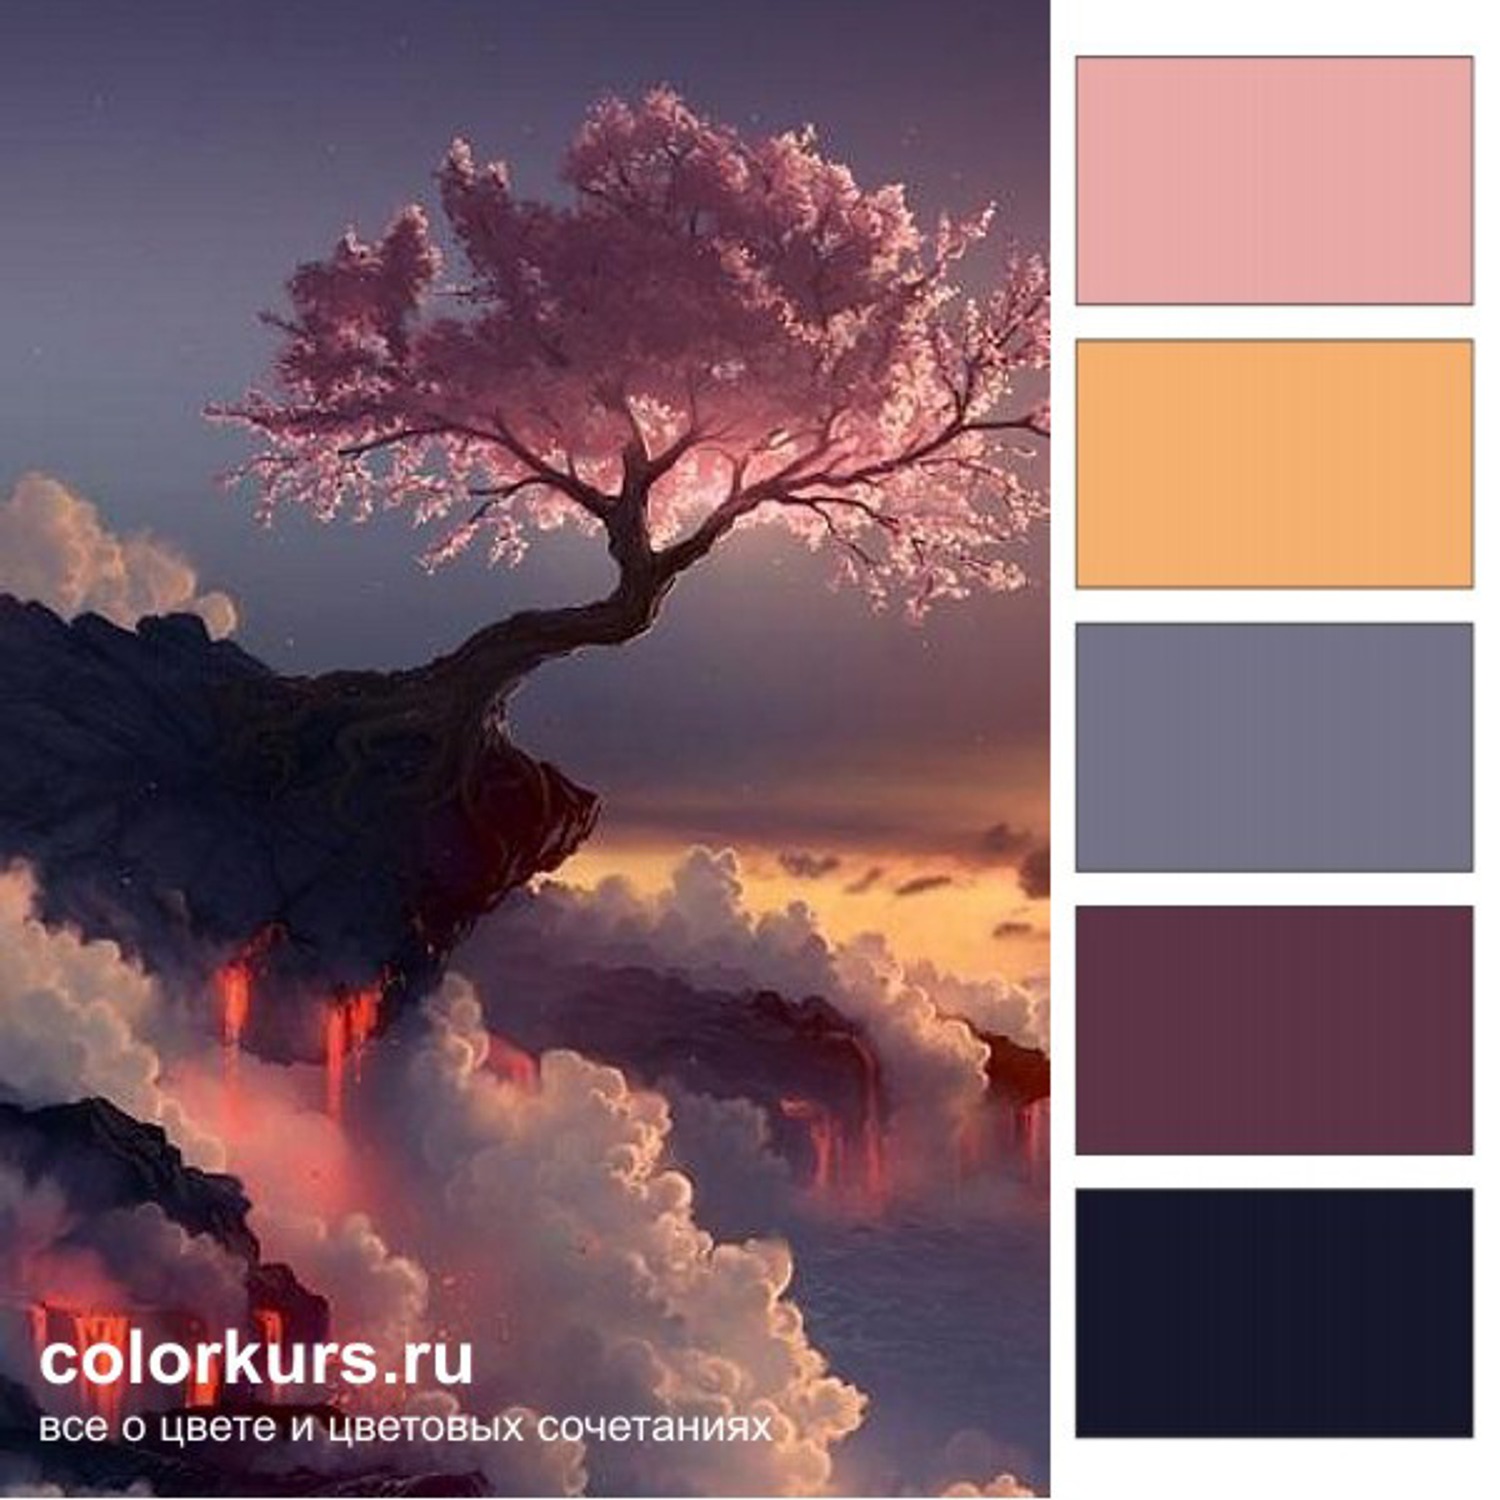 Как красиво сочетать цвета? Учимся у природы!